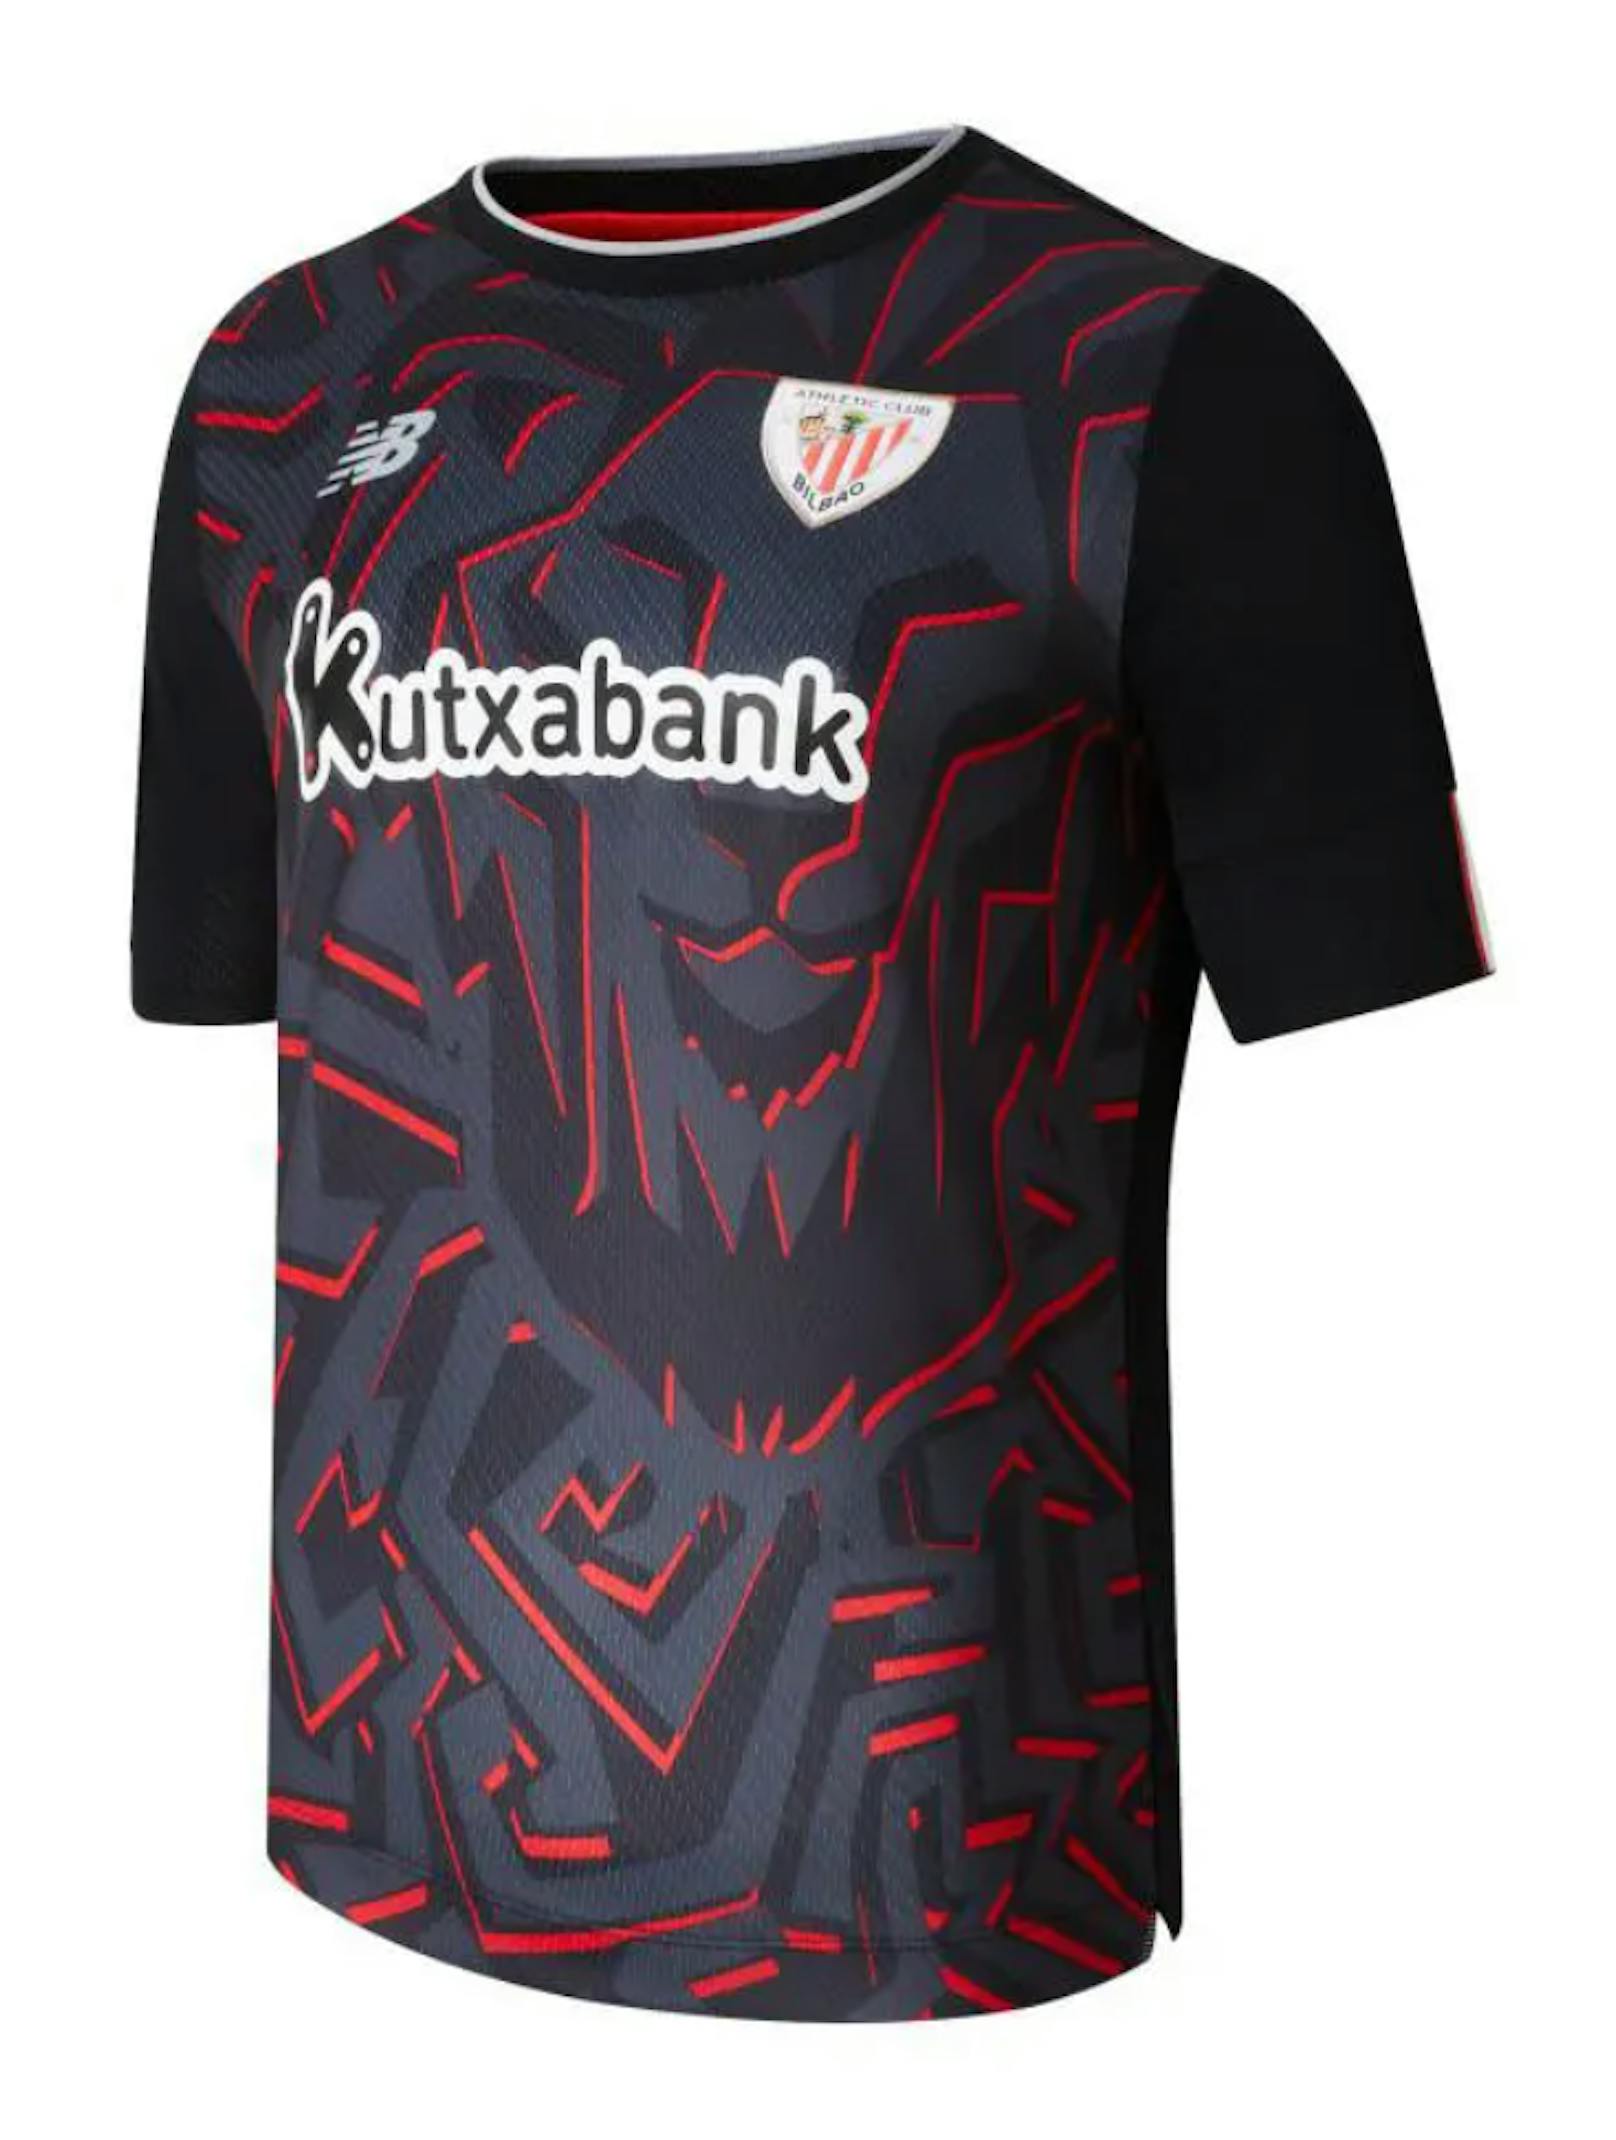 La-Liga-Klub Athletic Bilbao schießt mit diesem Löwen-Design den Vogel ab, spaltet die Fan-Gemeinde. Die einen finden das gewagte Outfit super, andere sind entsetzt.